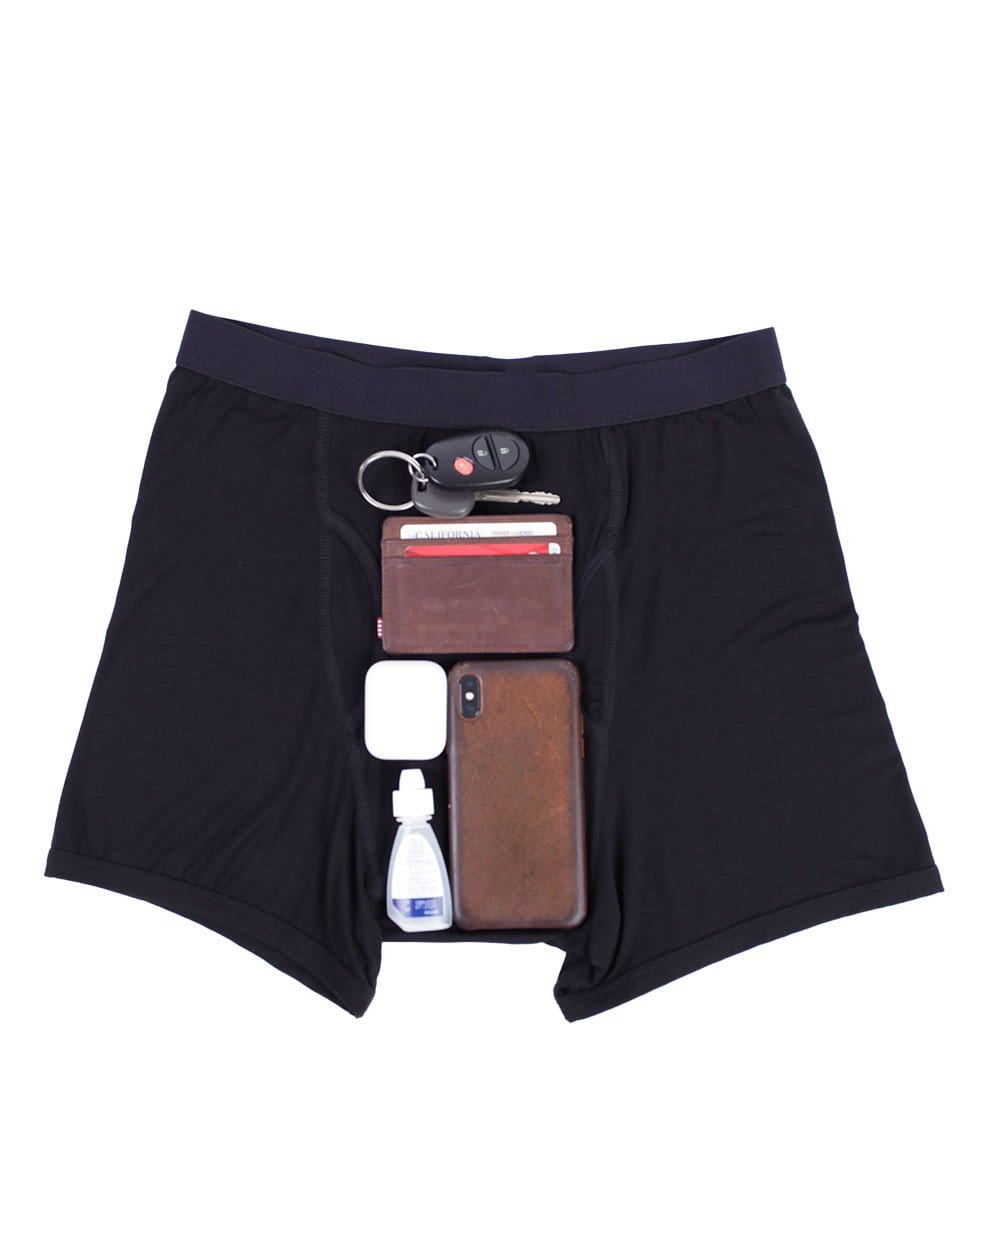 Pocket Underwear for Men with Secret Hidden Pocket, Travel Stash Boxer  Brief, Large Size 2 Packs (Dark Blue) at  Men's Clothing store